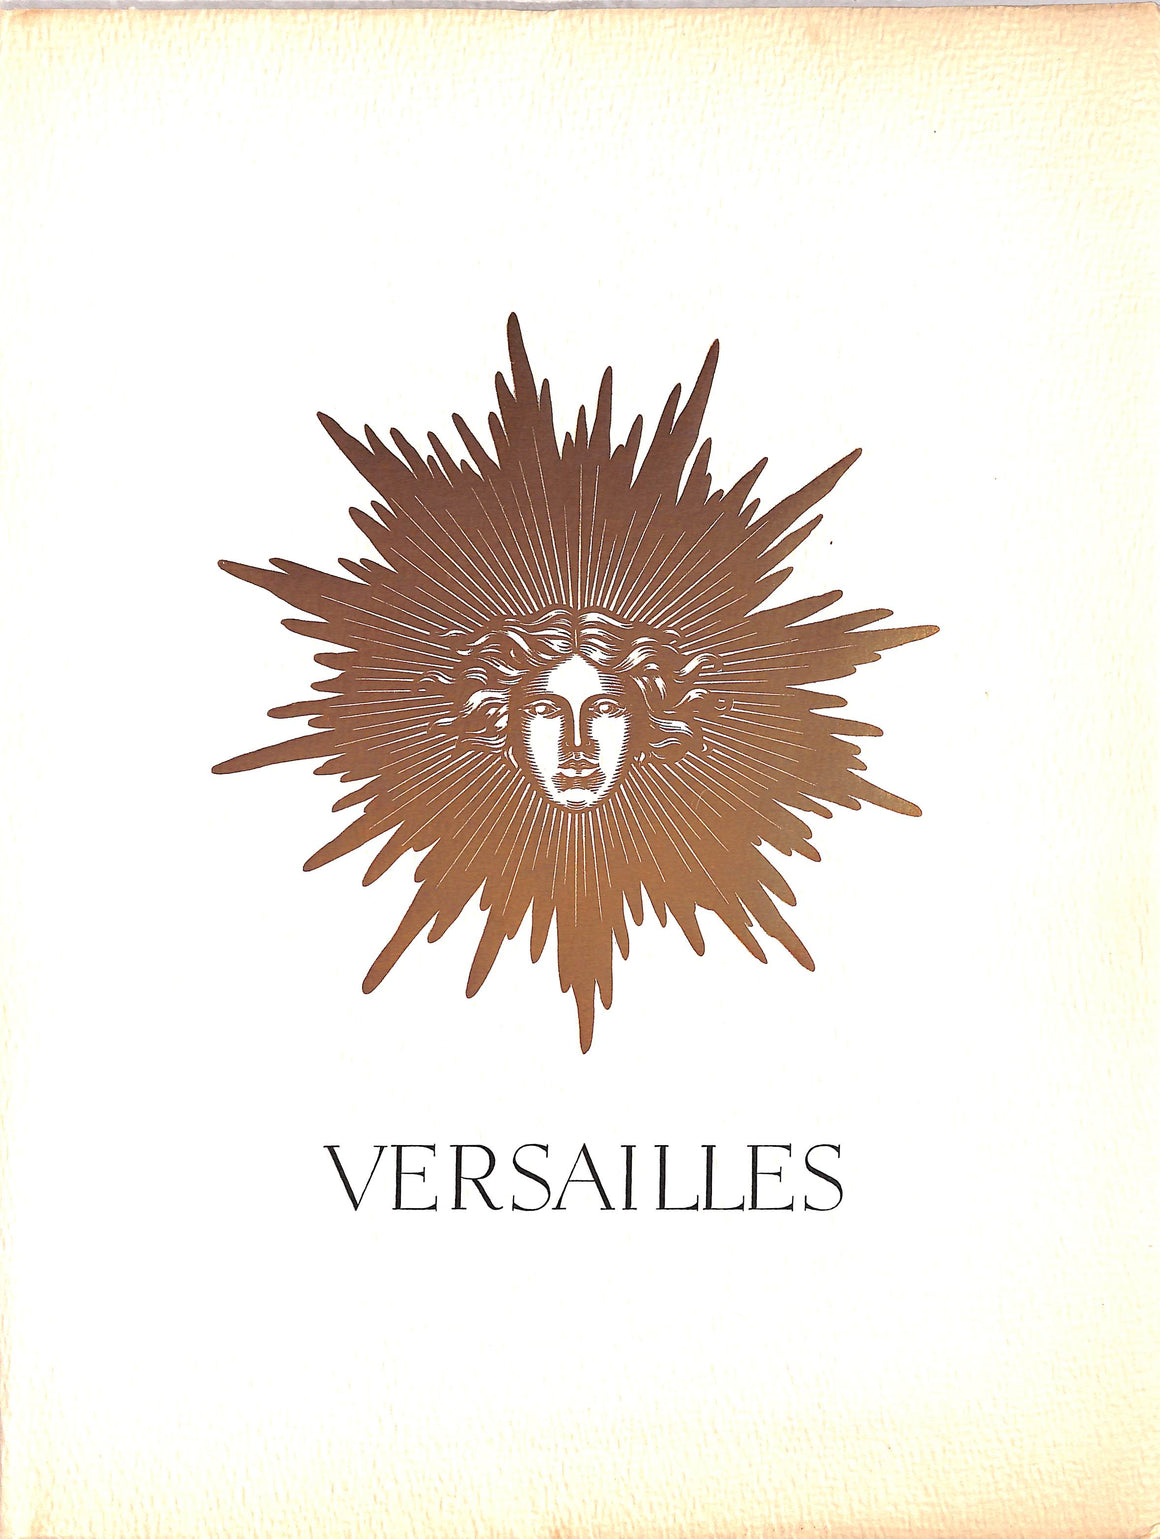 "Versailles: PATRIMOINE NATIONAL / TEMOIN D'ART ET DE GRANDEUR / HAUT LIEU DE FRANCE / MIROIR DU GRAND SIECLE" 1953